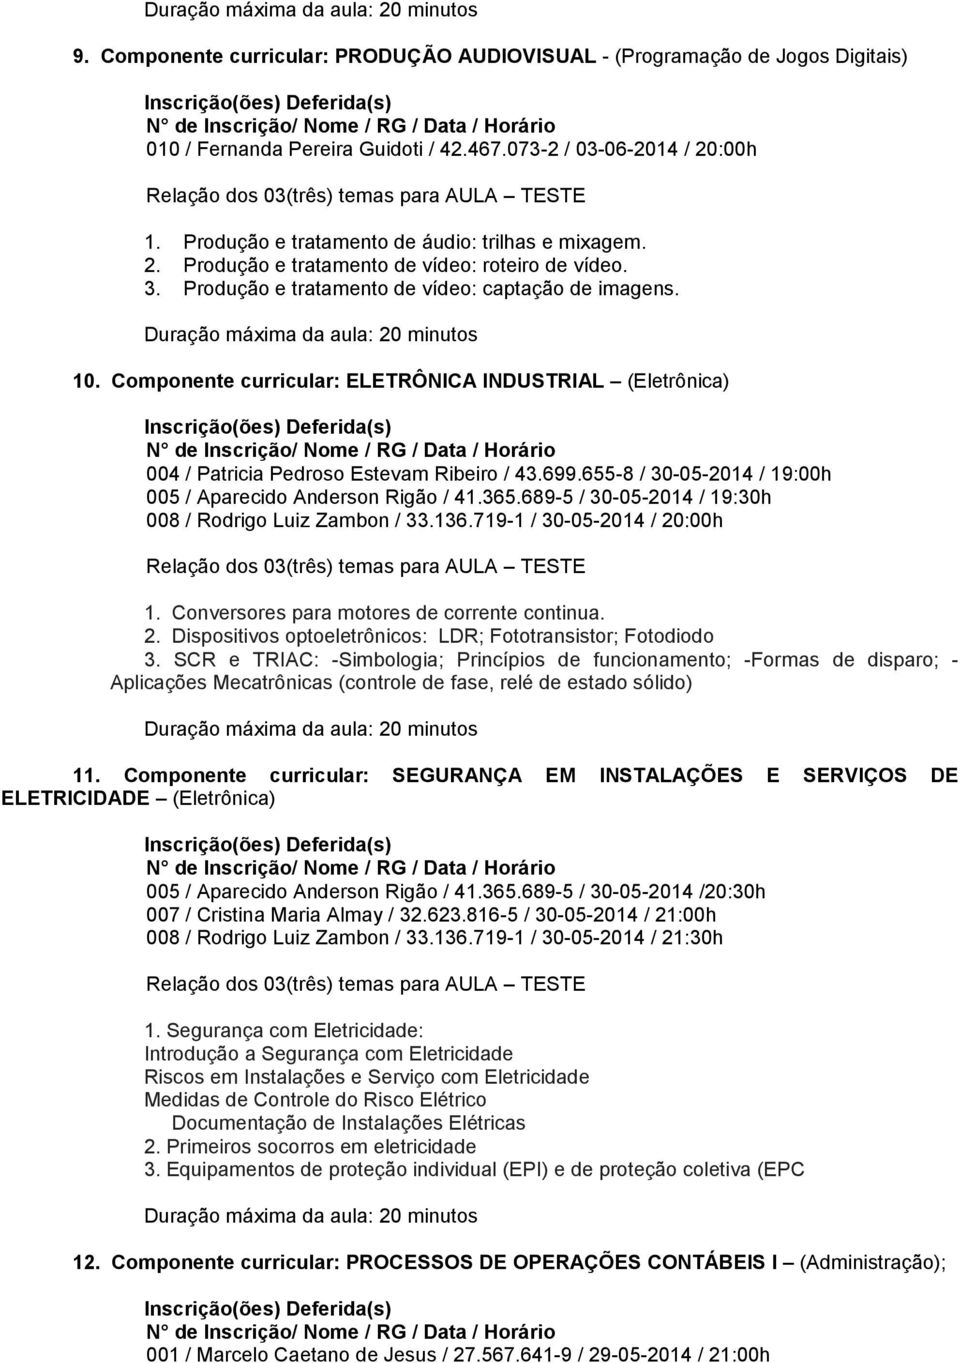 Componente curricular: ELETRÔNICA INDUSTRIAL (Eletrônica) 004 / Patricia Pedroso Estevam Ribeiro / 43.699.655-8 / 30-05-2014 / 19:00h 005 / Aparecido Anderson Rigão / 41.365.